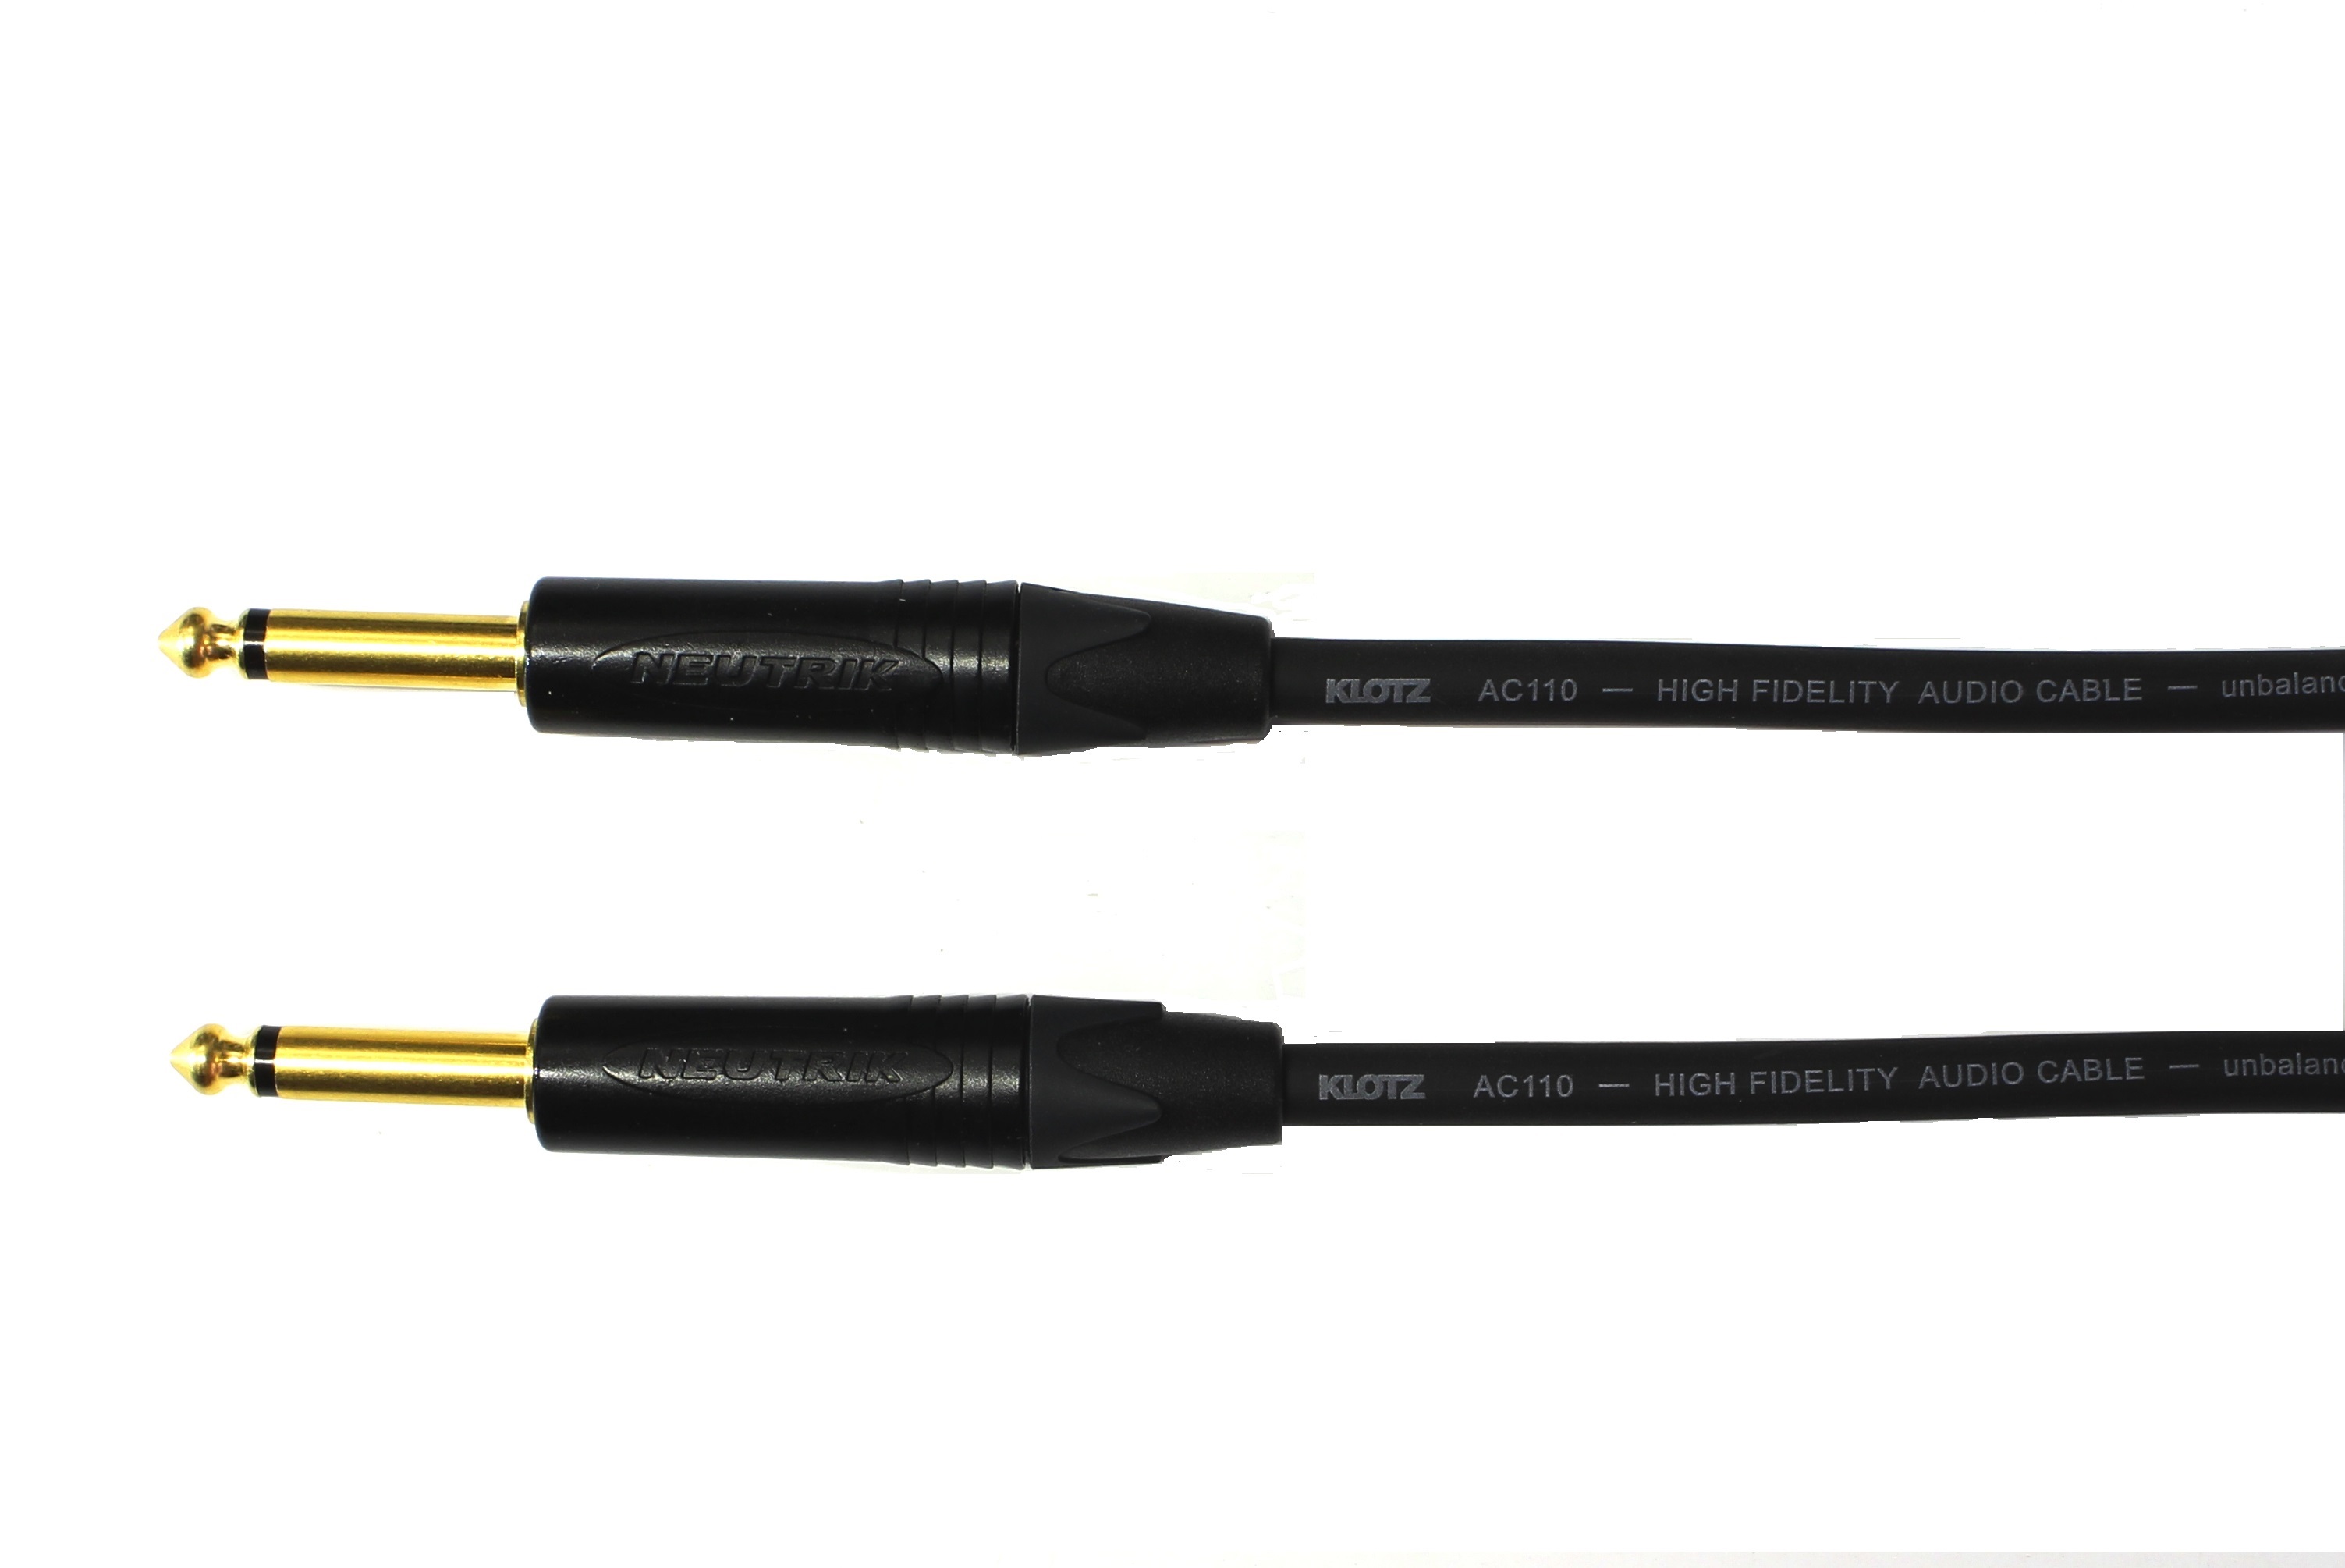 Kytarový kabel Jack 6,3 mono přímý/ Jack 6,3 mono přímý, 6 m, AC110